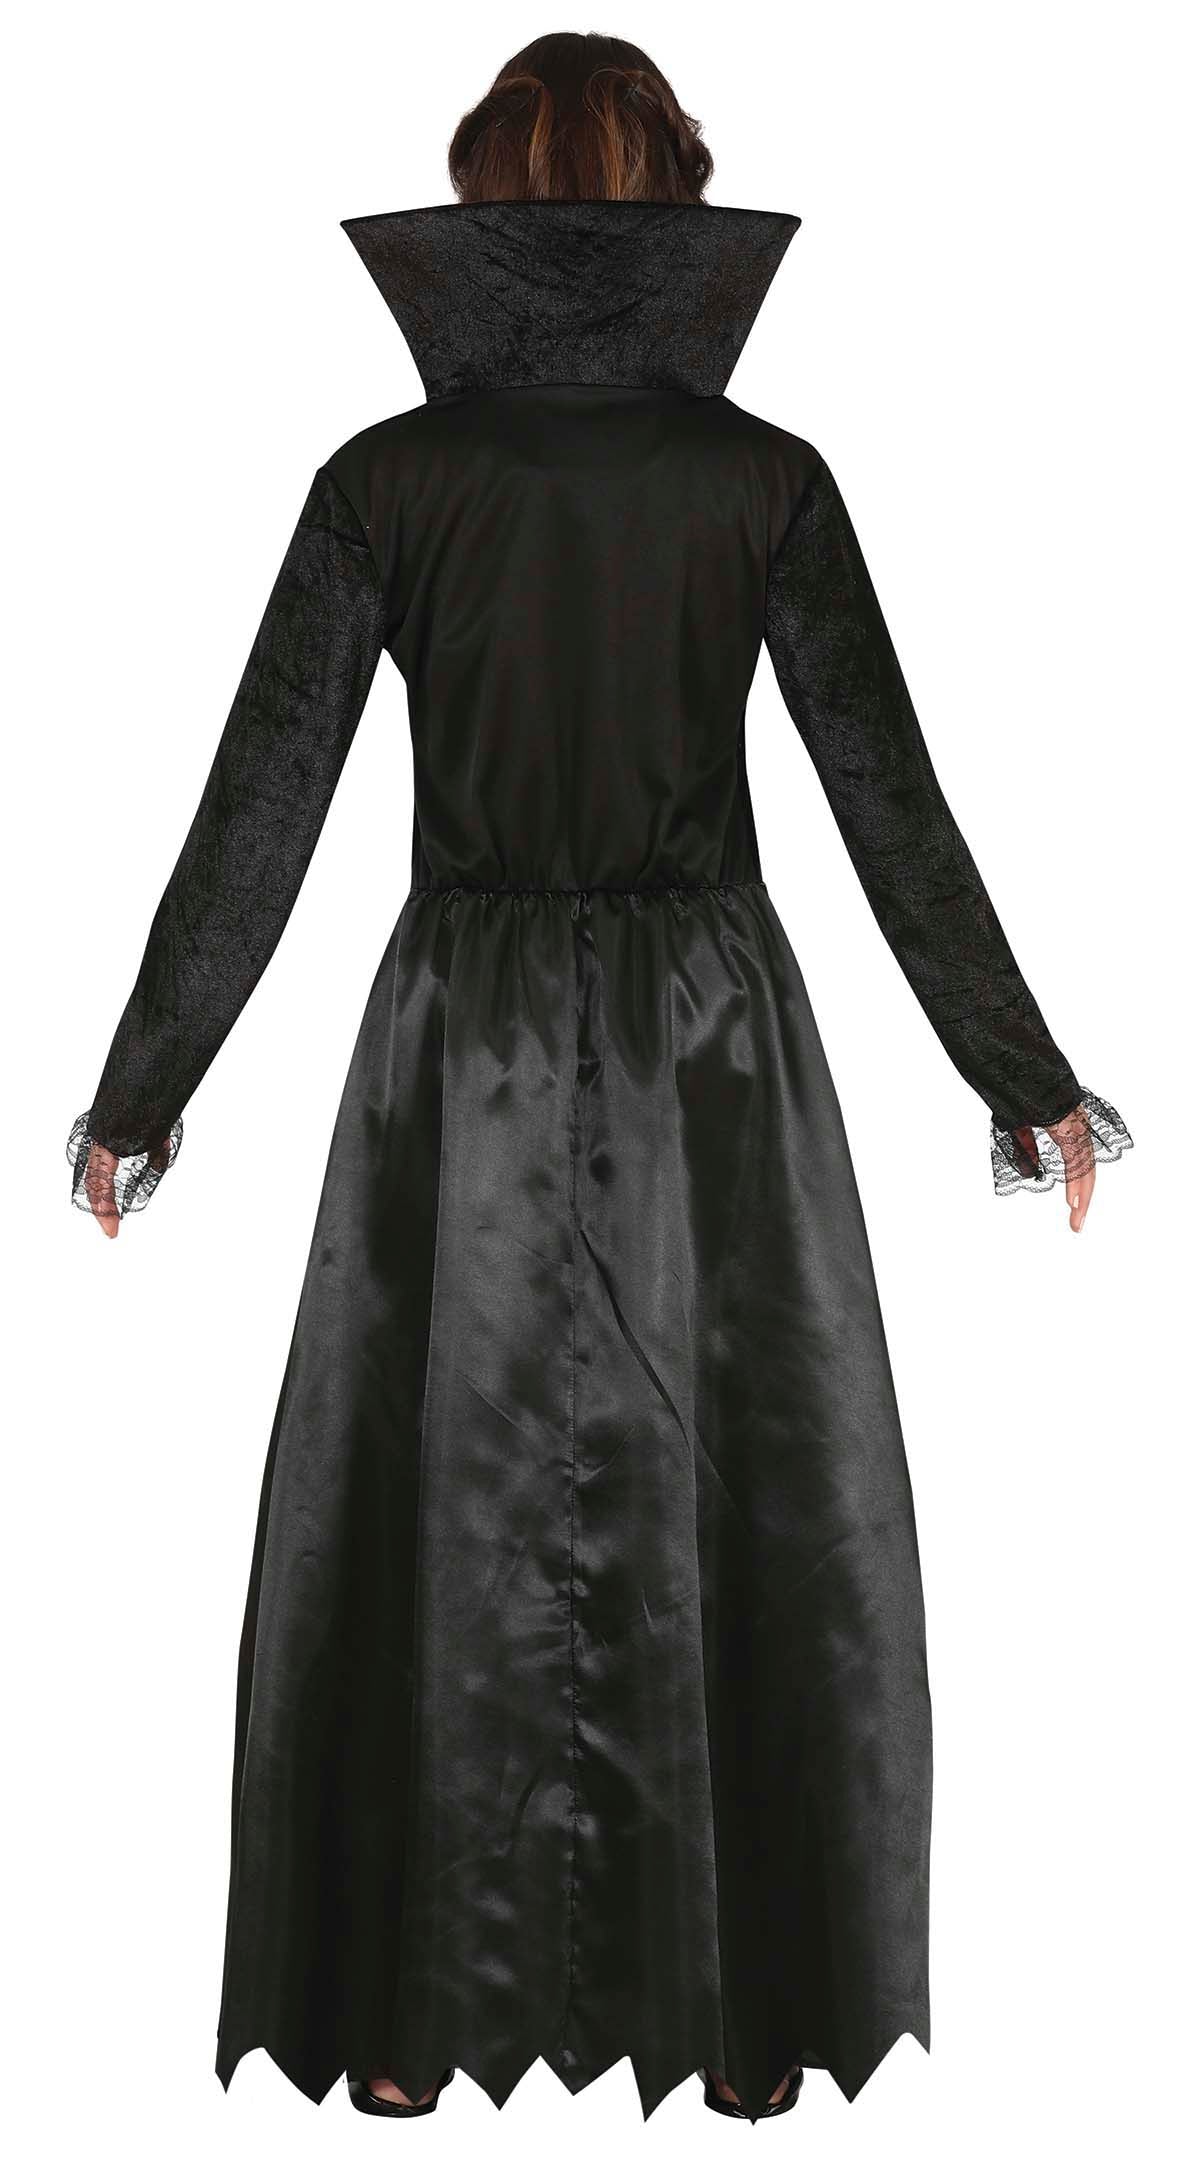 Black Vampiress Costume